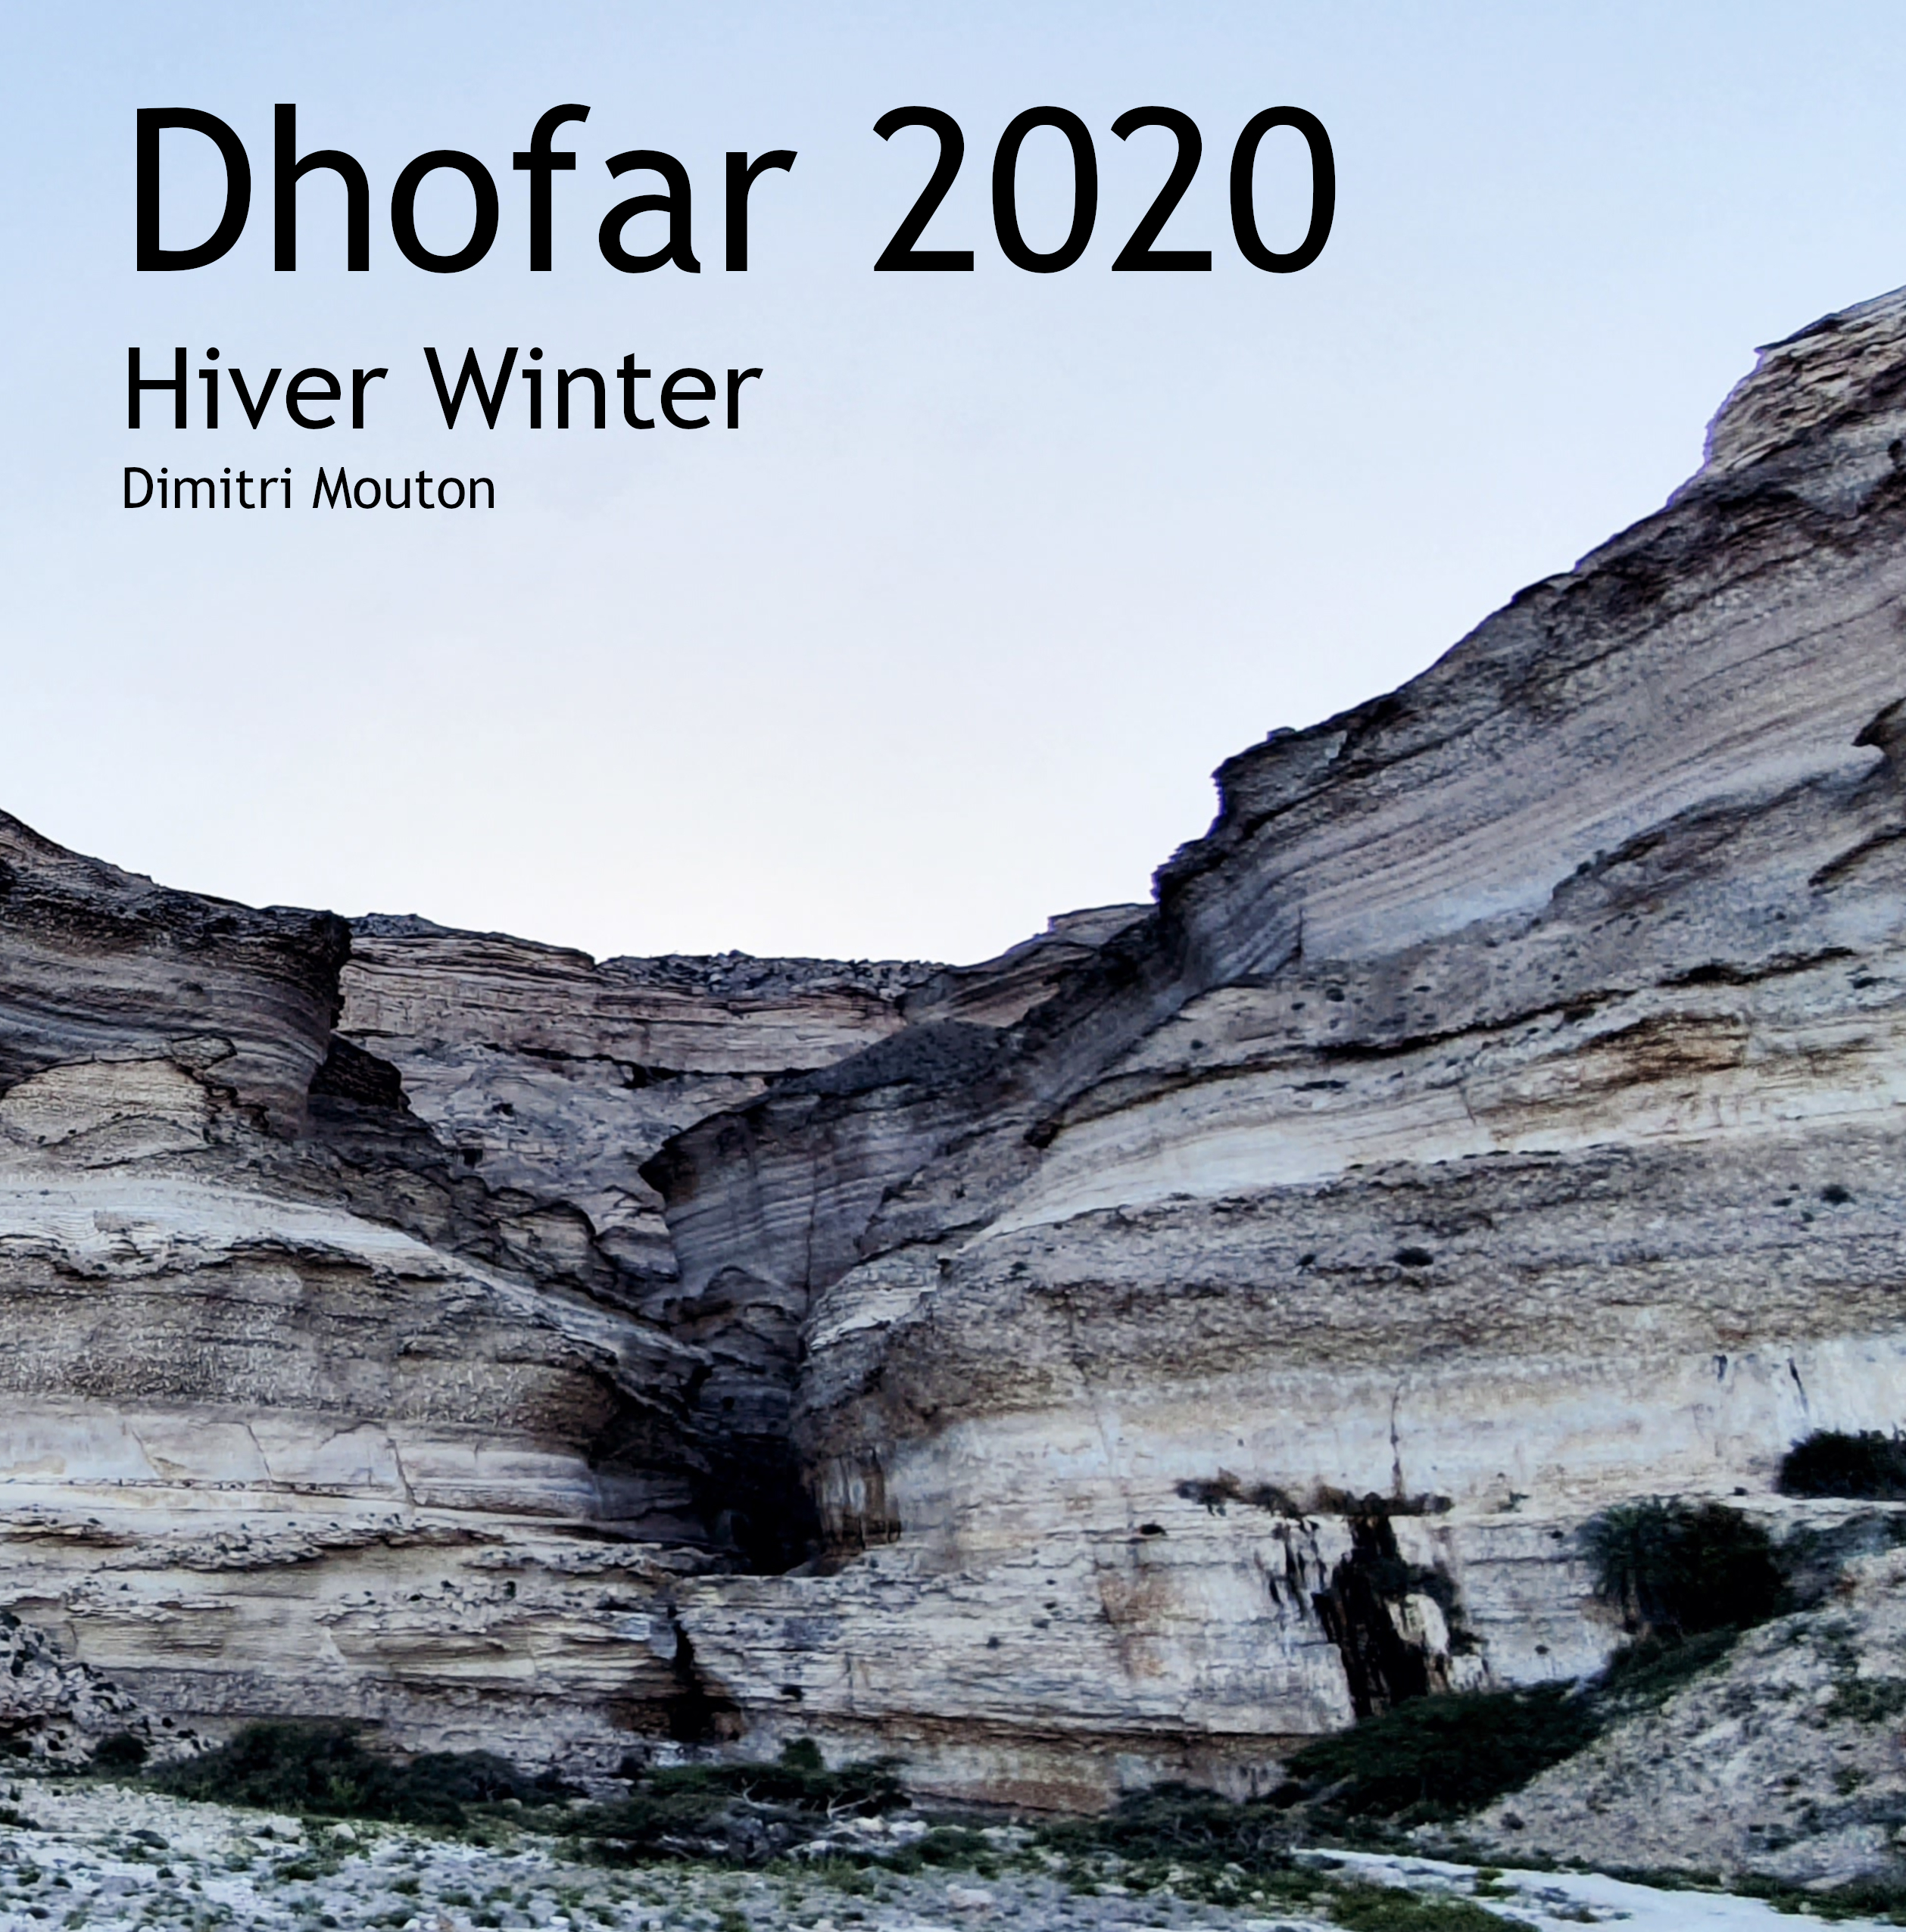 Dhofar hiver 2020